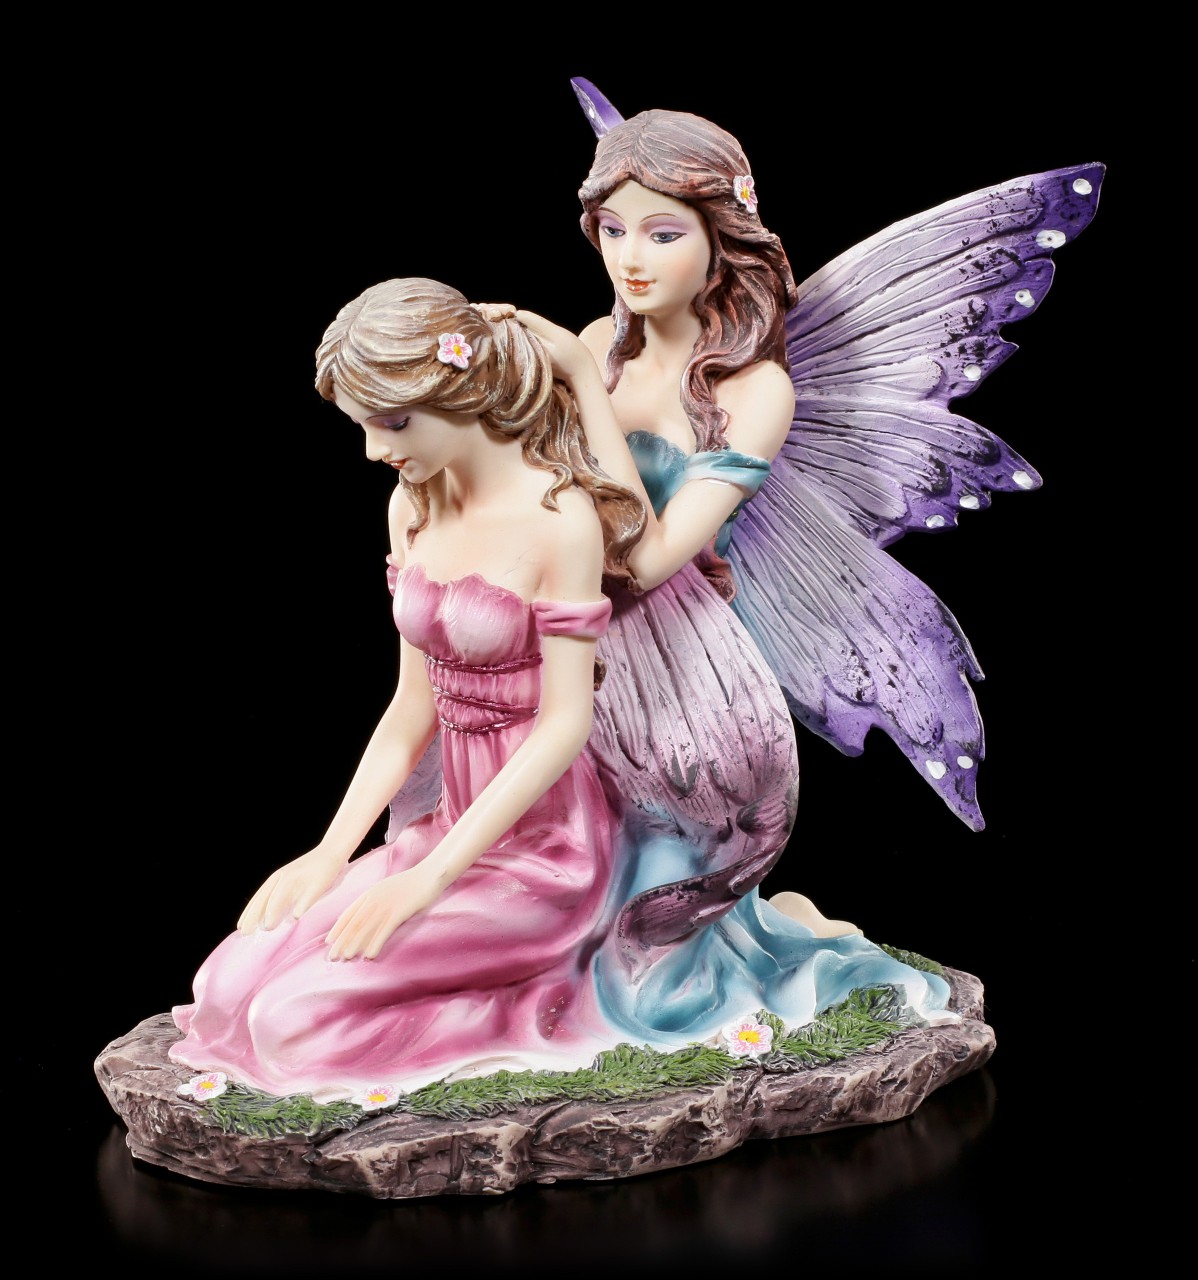 Fairy Figurines - Friends make their Hair